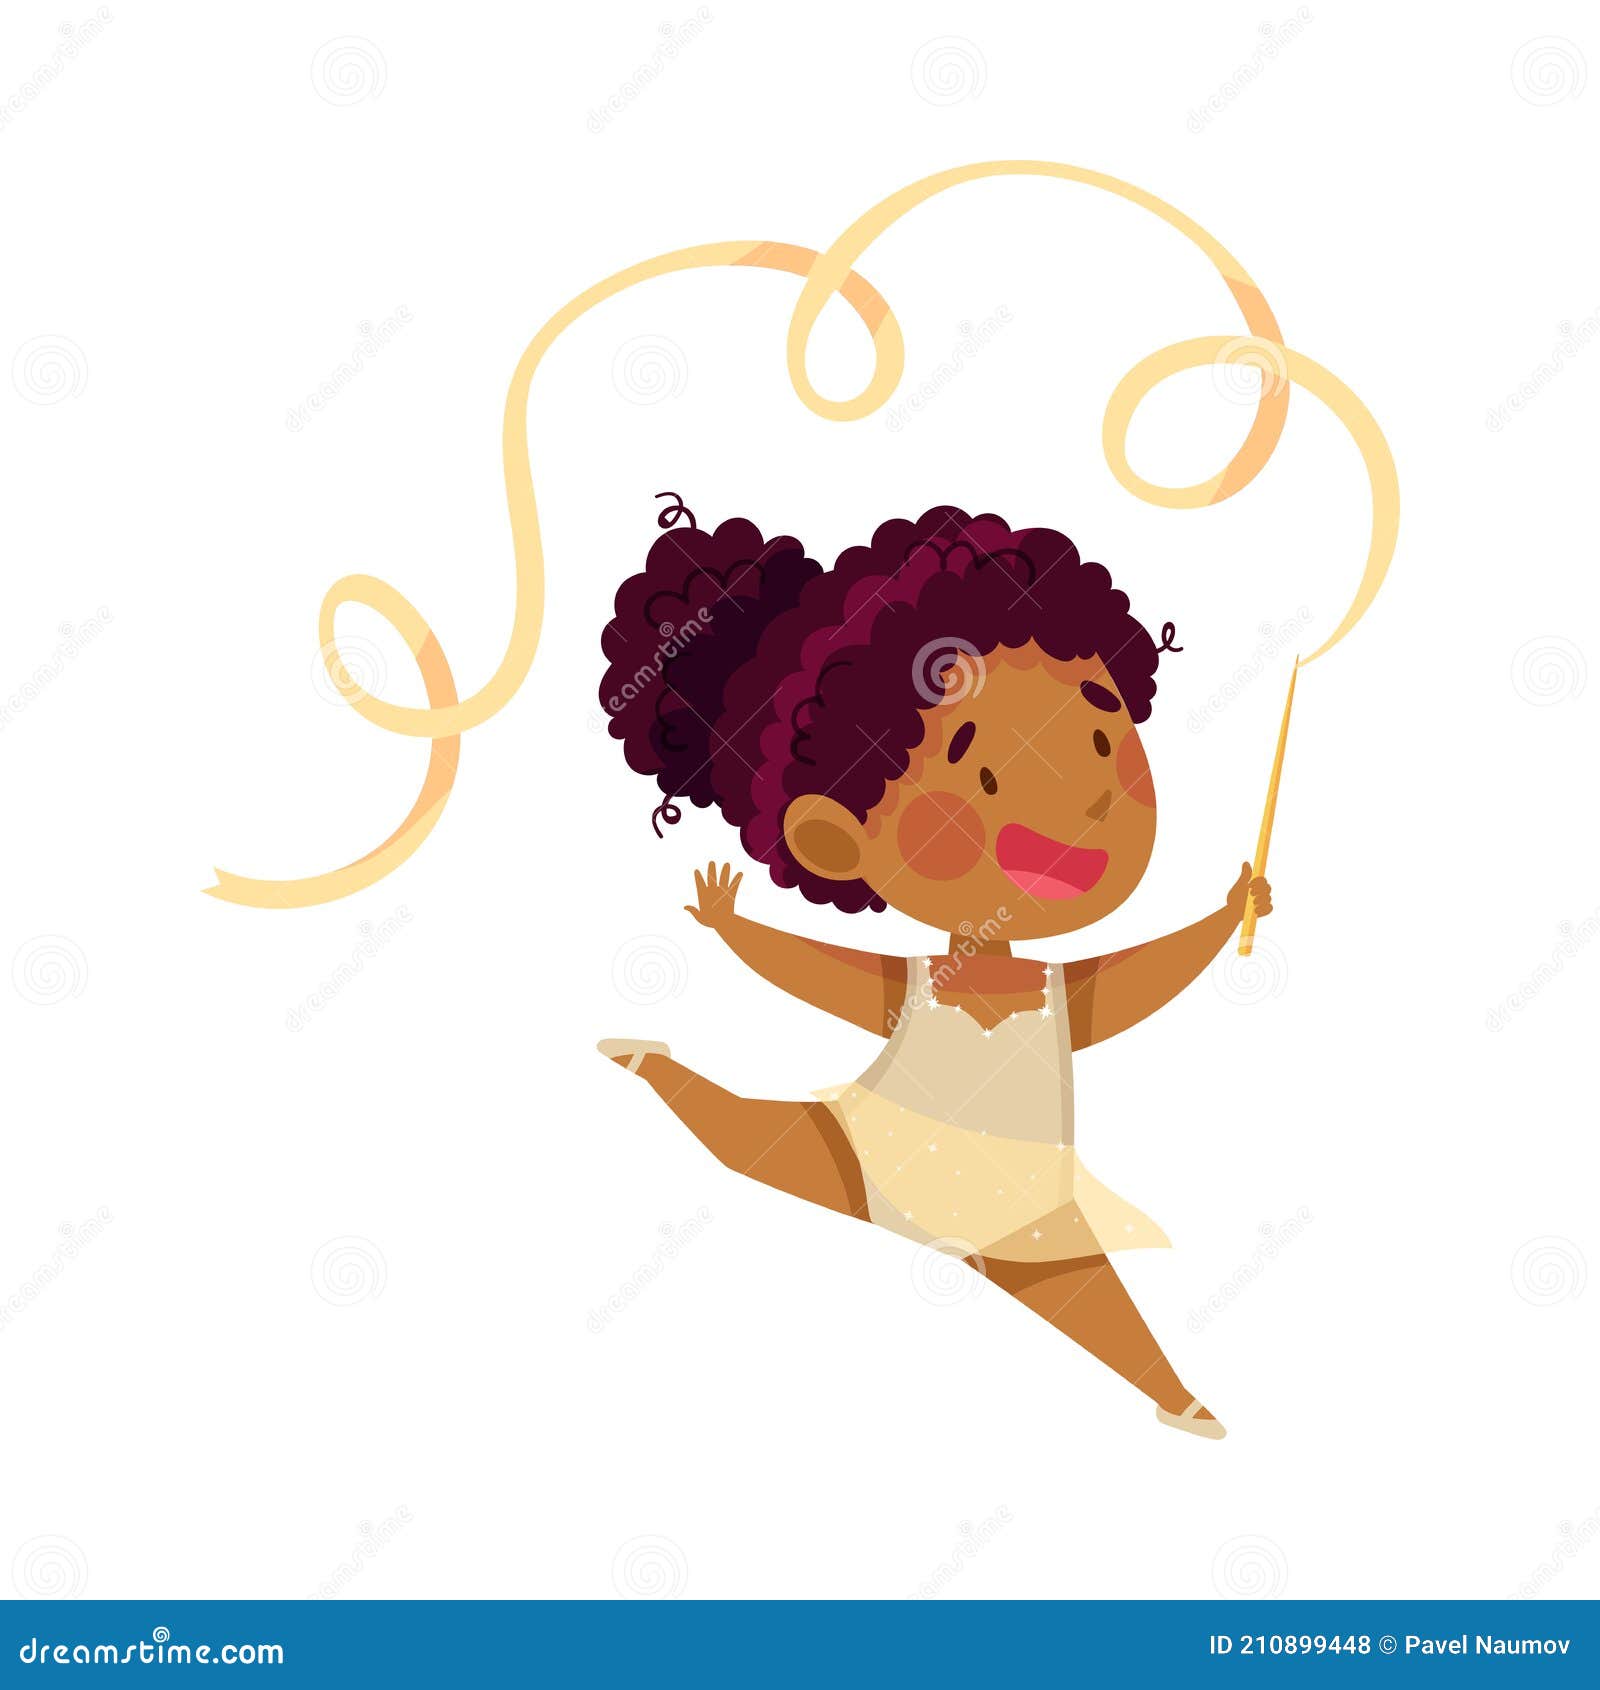 linda niña africana jugando con aro, pequeña gimnasta haciendo